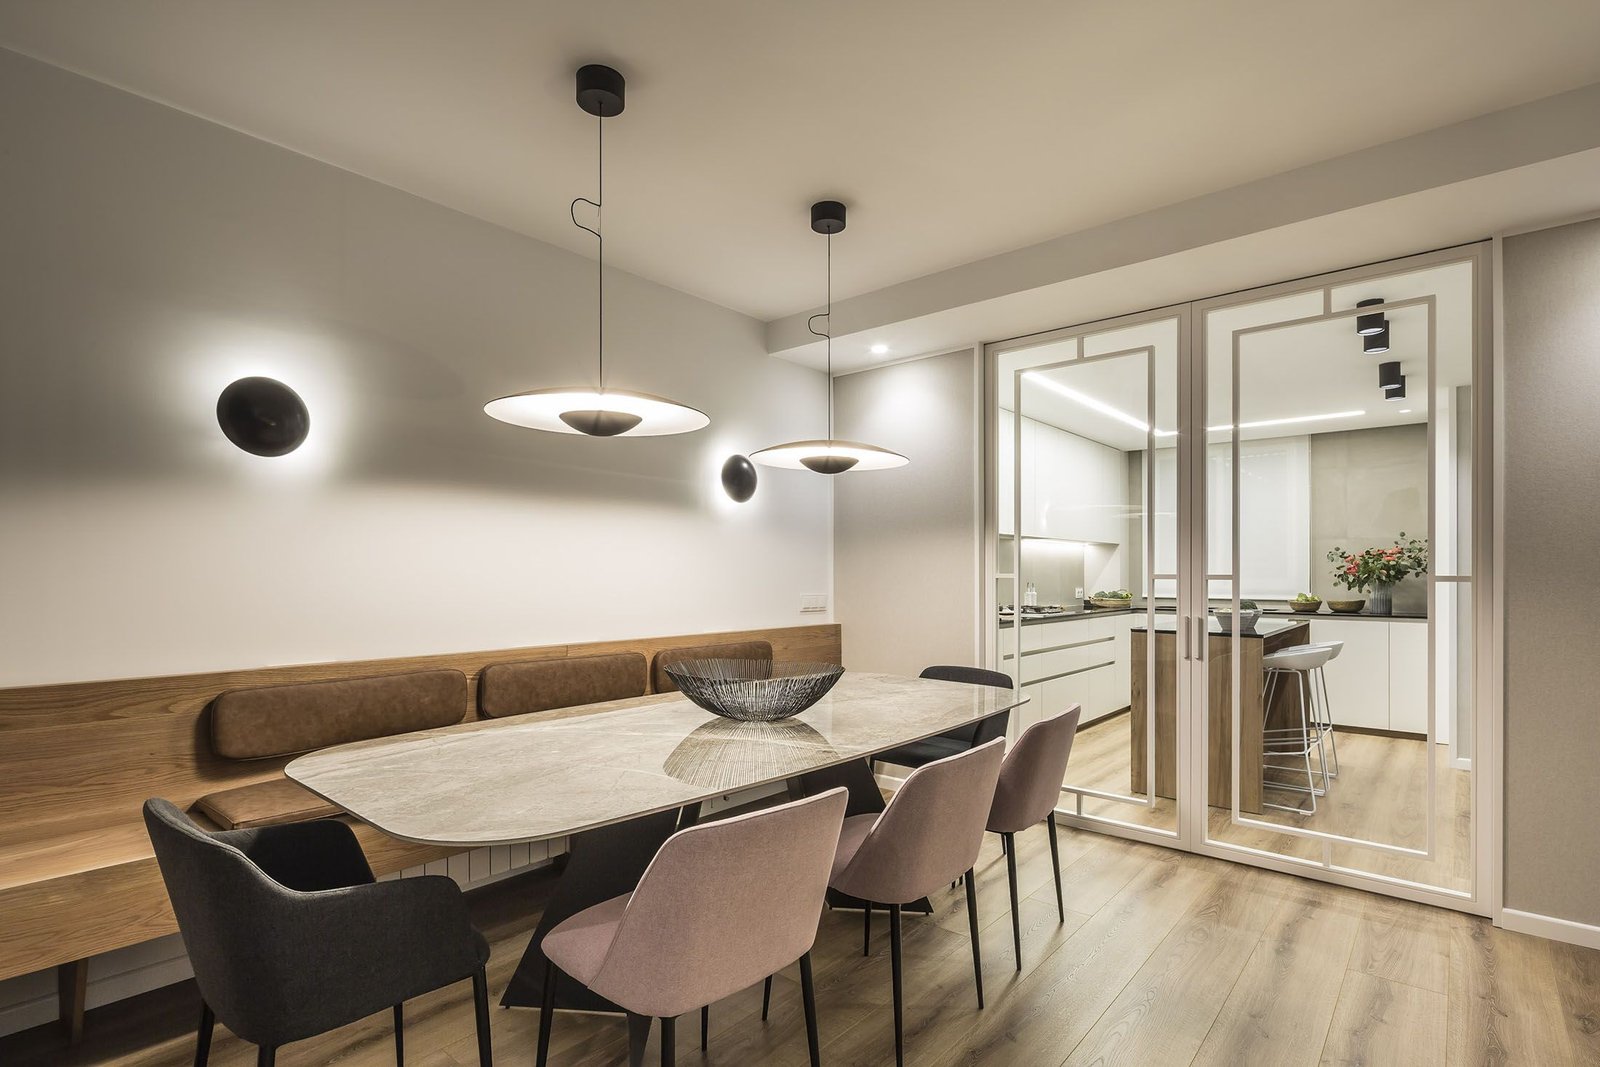 Interiorismo vivienda Valencia, zona bancada y mesa centro con sillas diferentes colores